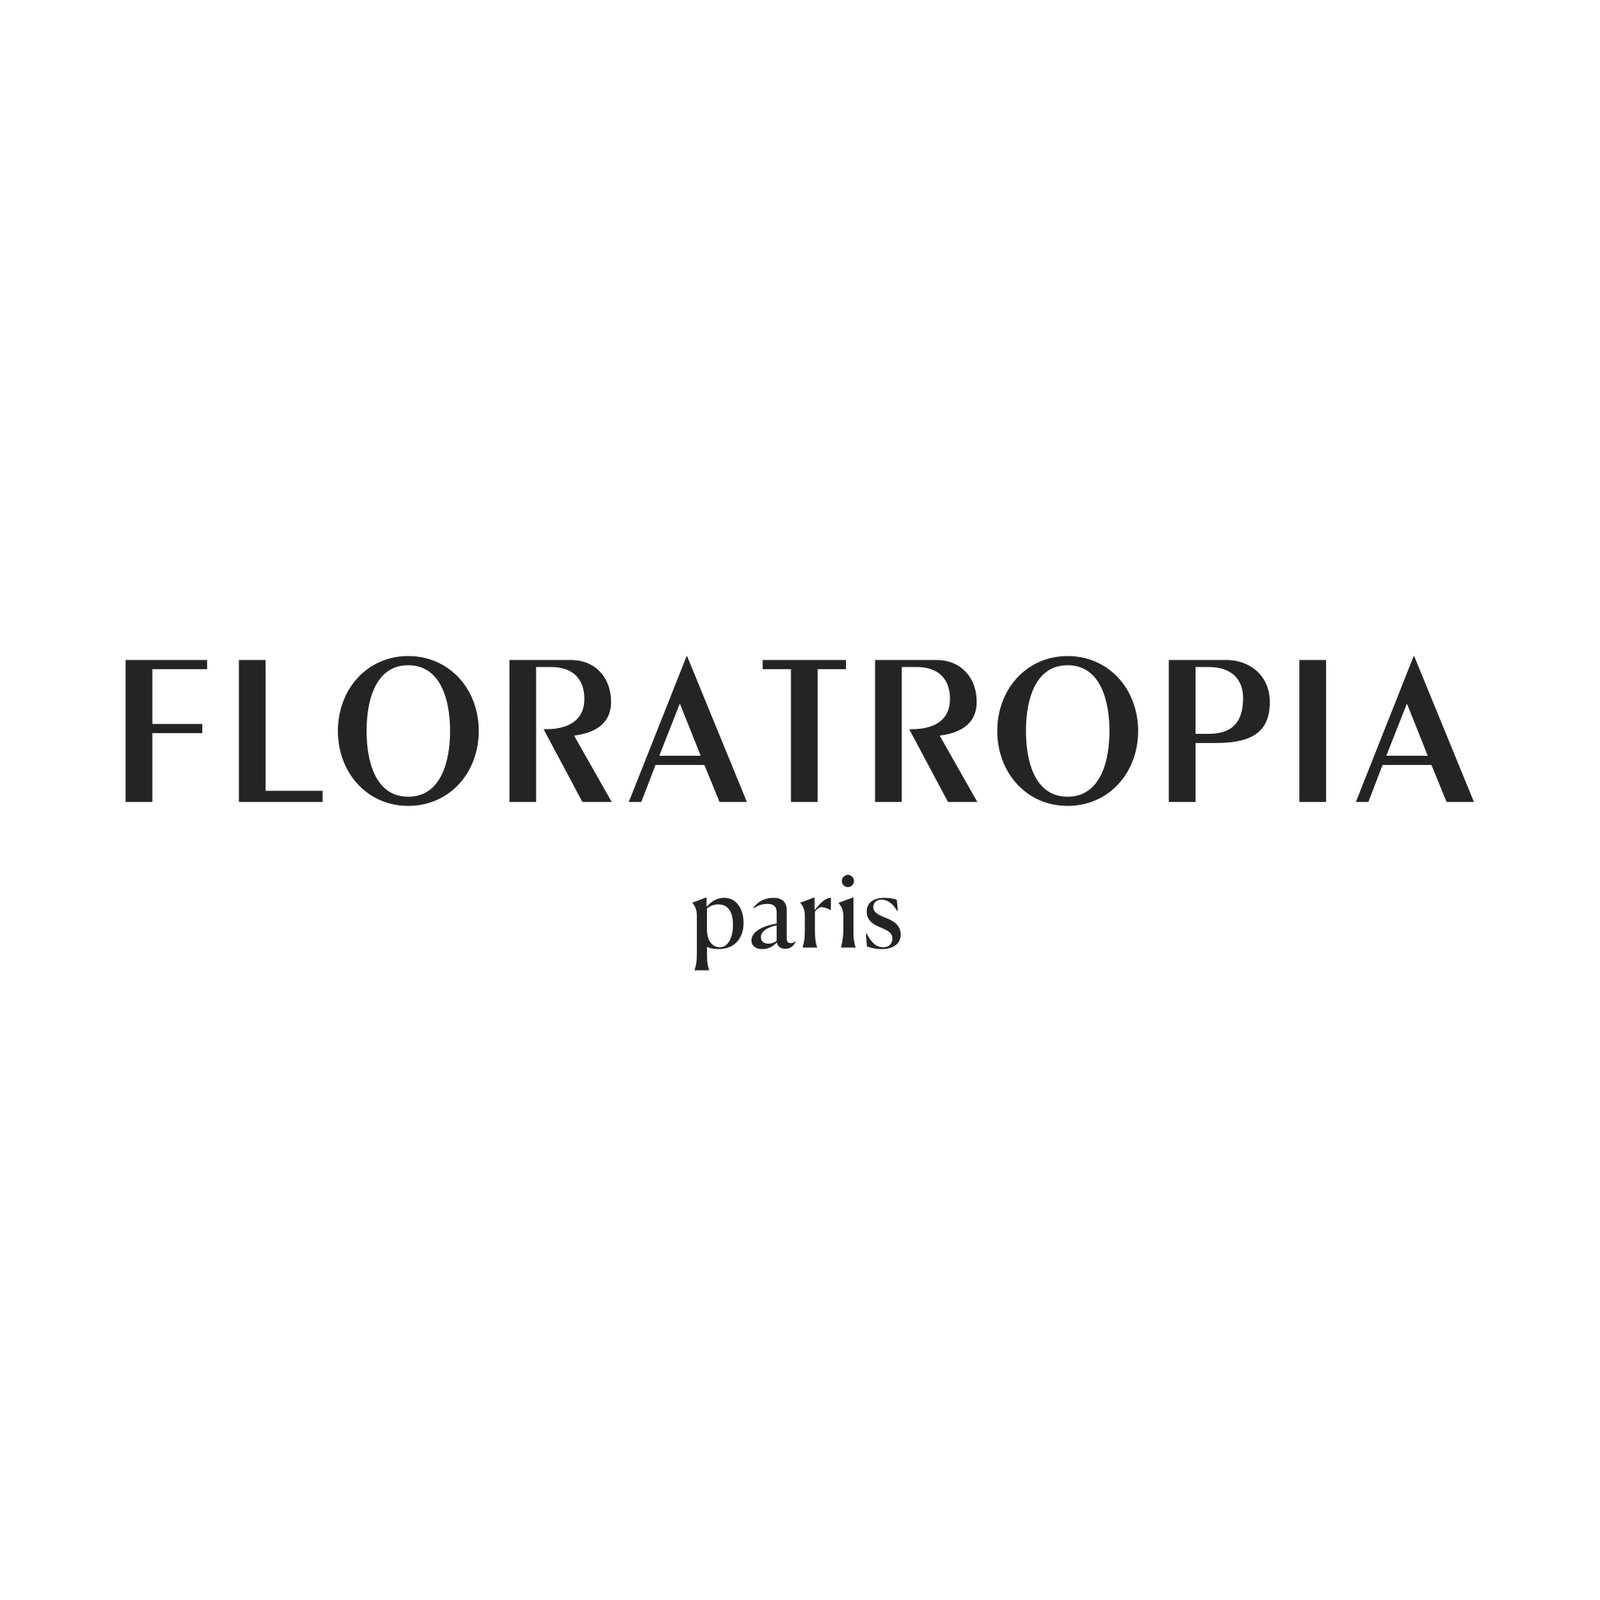 Floratropia